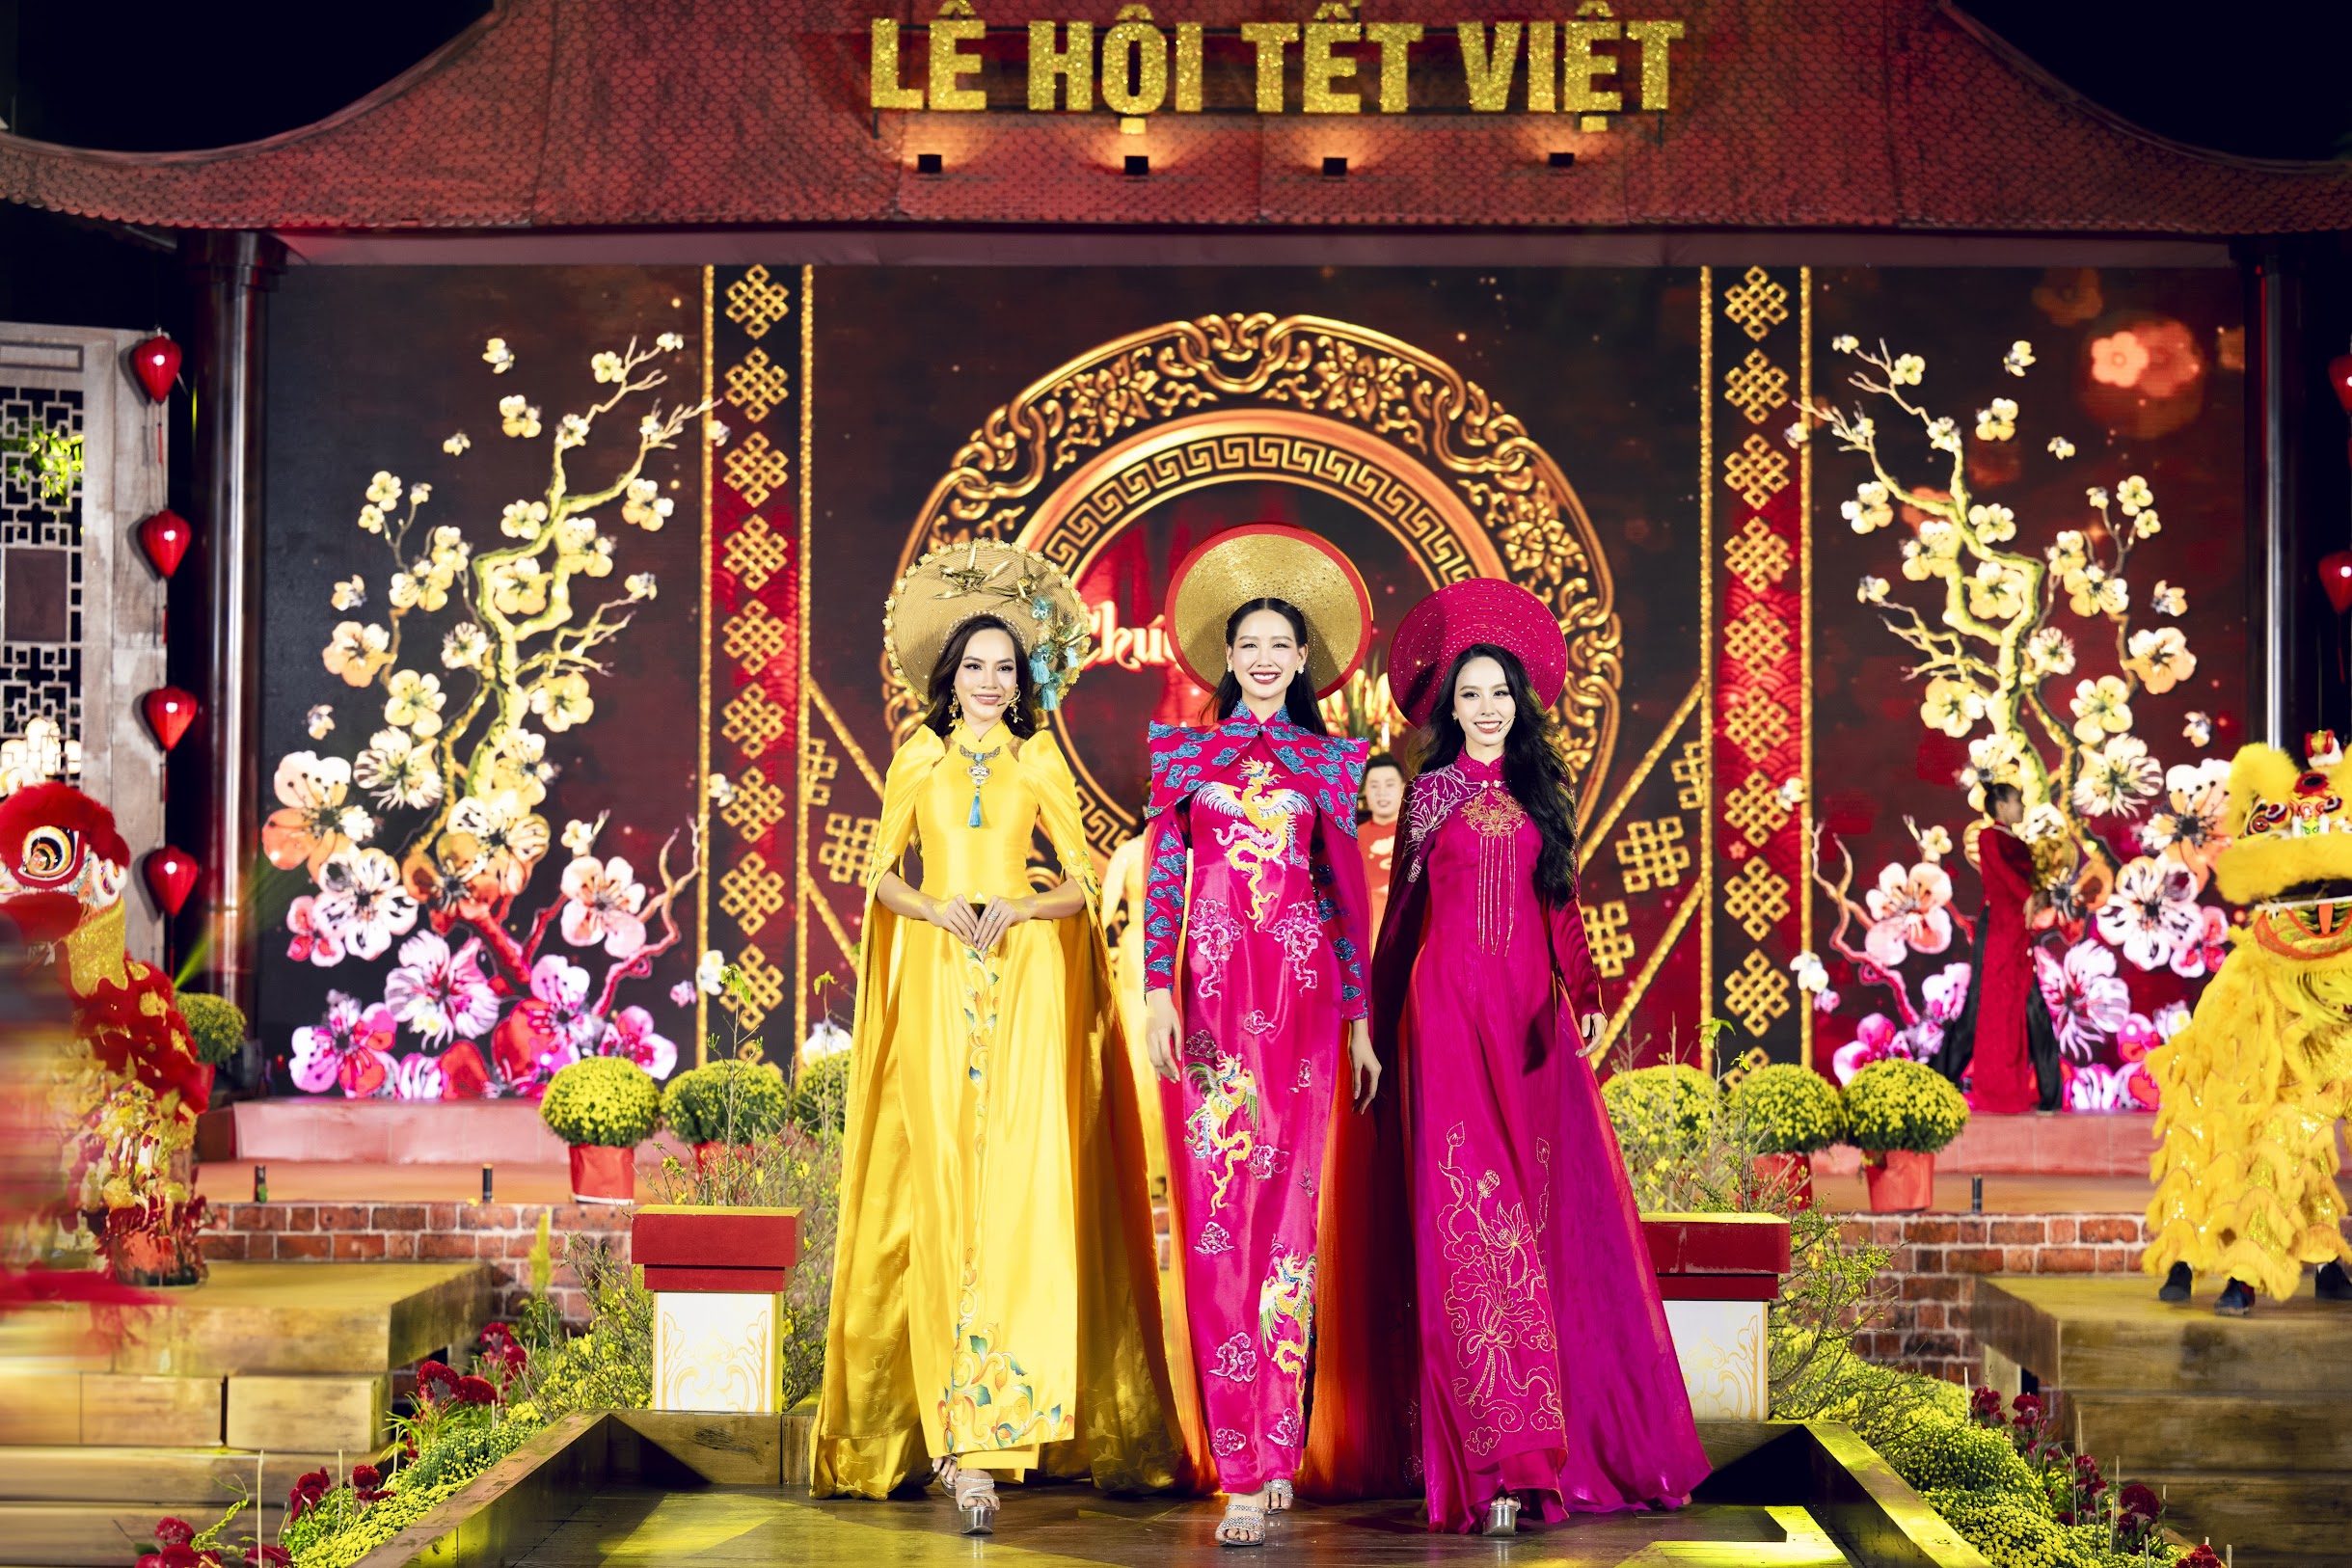 Ba đại sứ là các nàng hậu đại diện Bắc - Trung - Nam